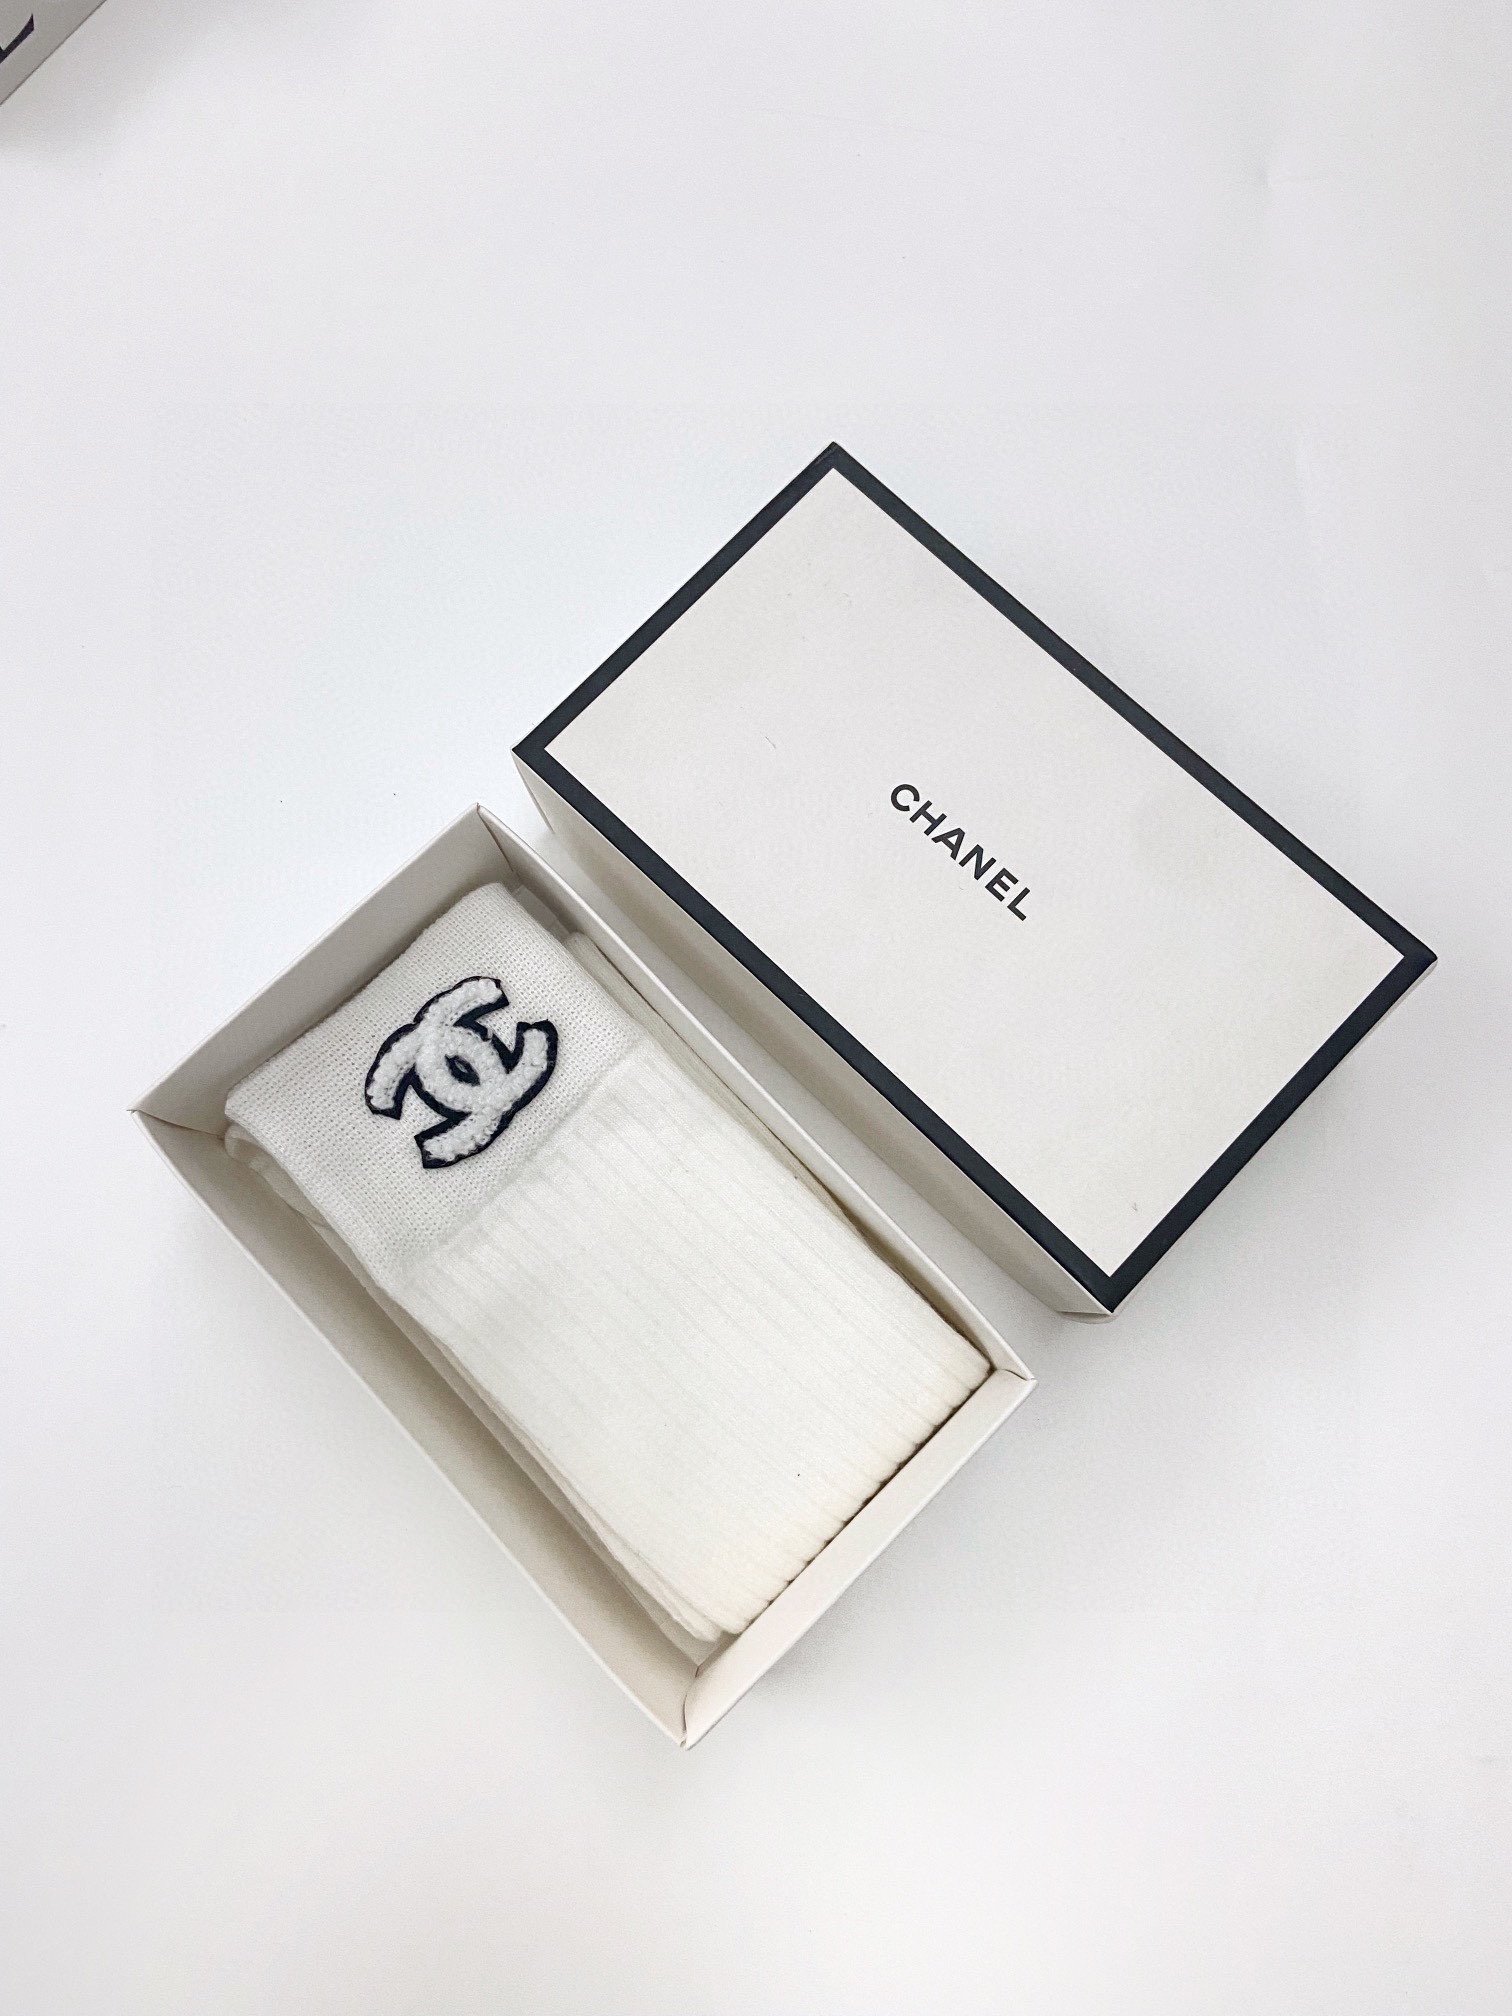 配包装一盒一双Chanel香奈儿爆款经典字母长筒袜小腿袜双针针织材质超完美结合款式经典专柜同步发售ins